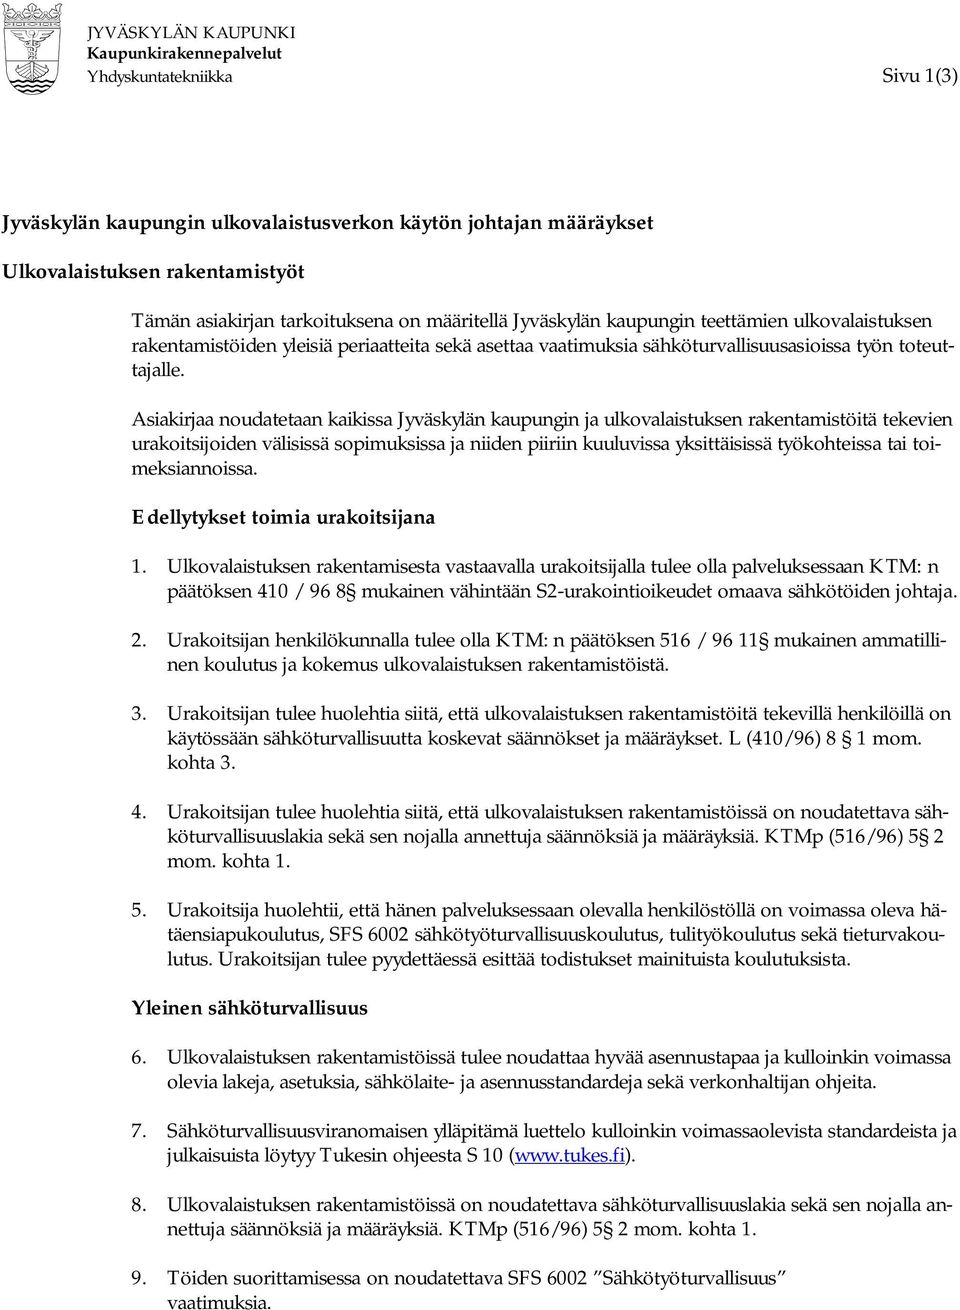 Asiakirjaa noudatetaan kaikissa Jyväskylän kaupungin ja ulkovalaistuksen rakentamistöitä tekevien urakoitsijoiden välisissä sopimuksissa ja niiden piiriin kuuluvissa yksittäisissä työkohteissa tai